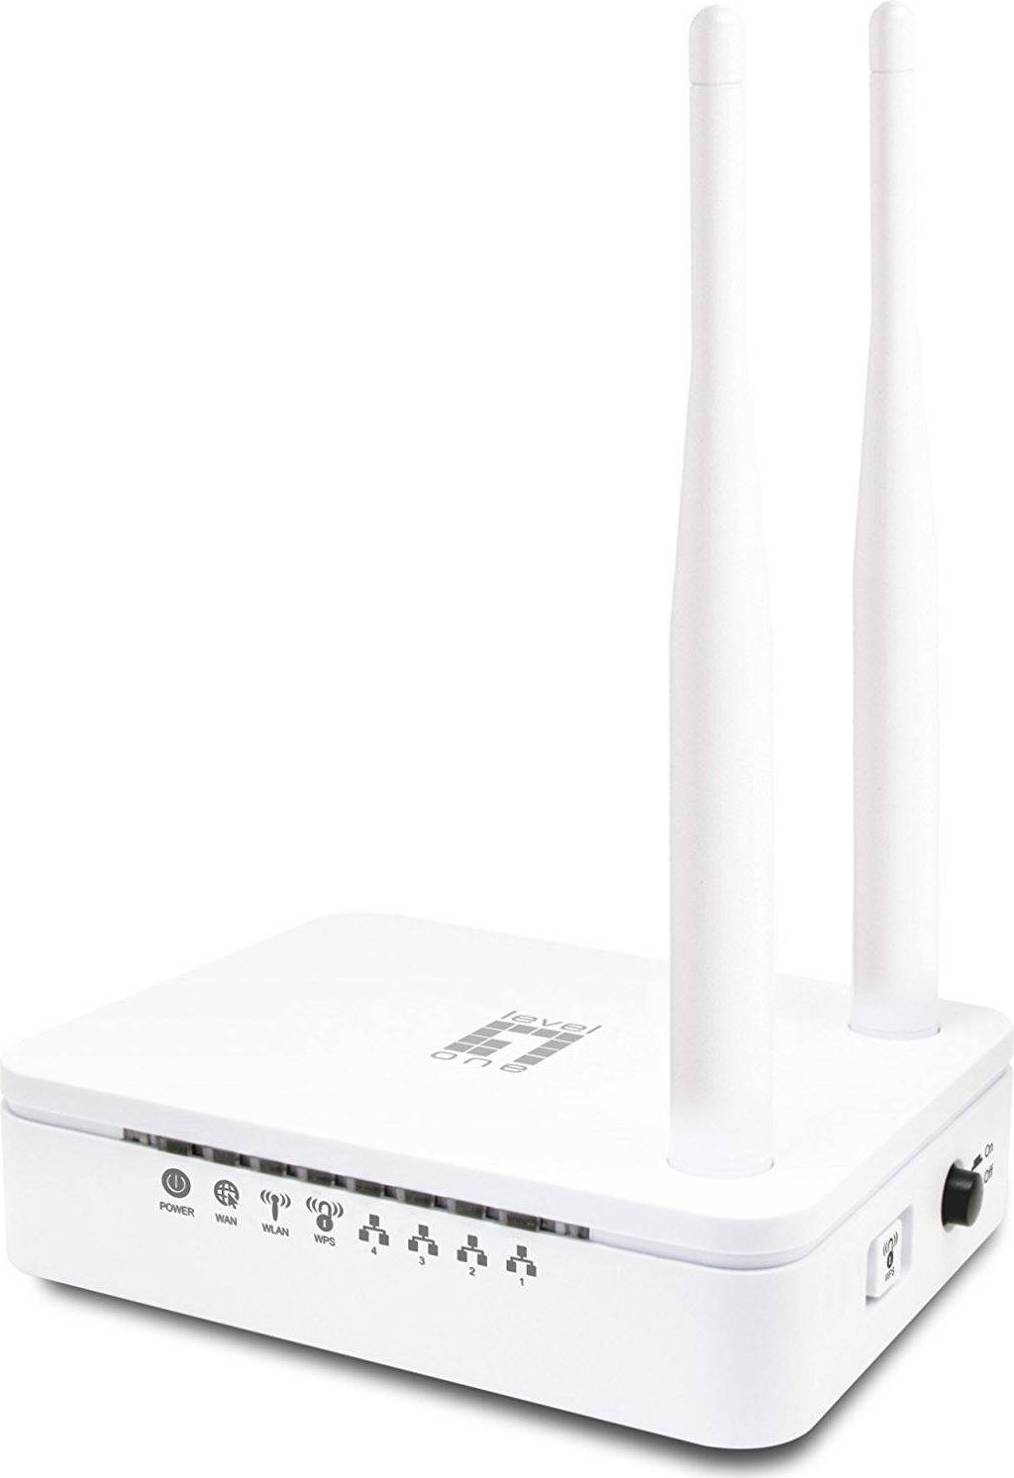  Bild på LevelOne WBR-6013 router